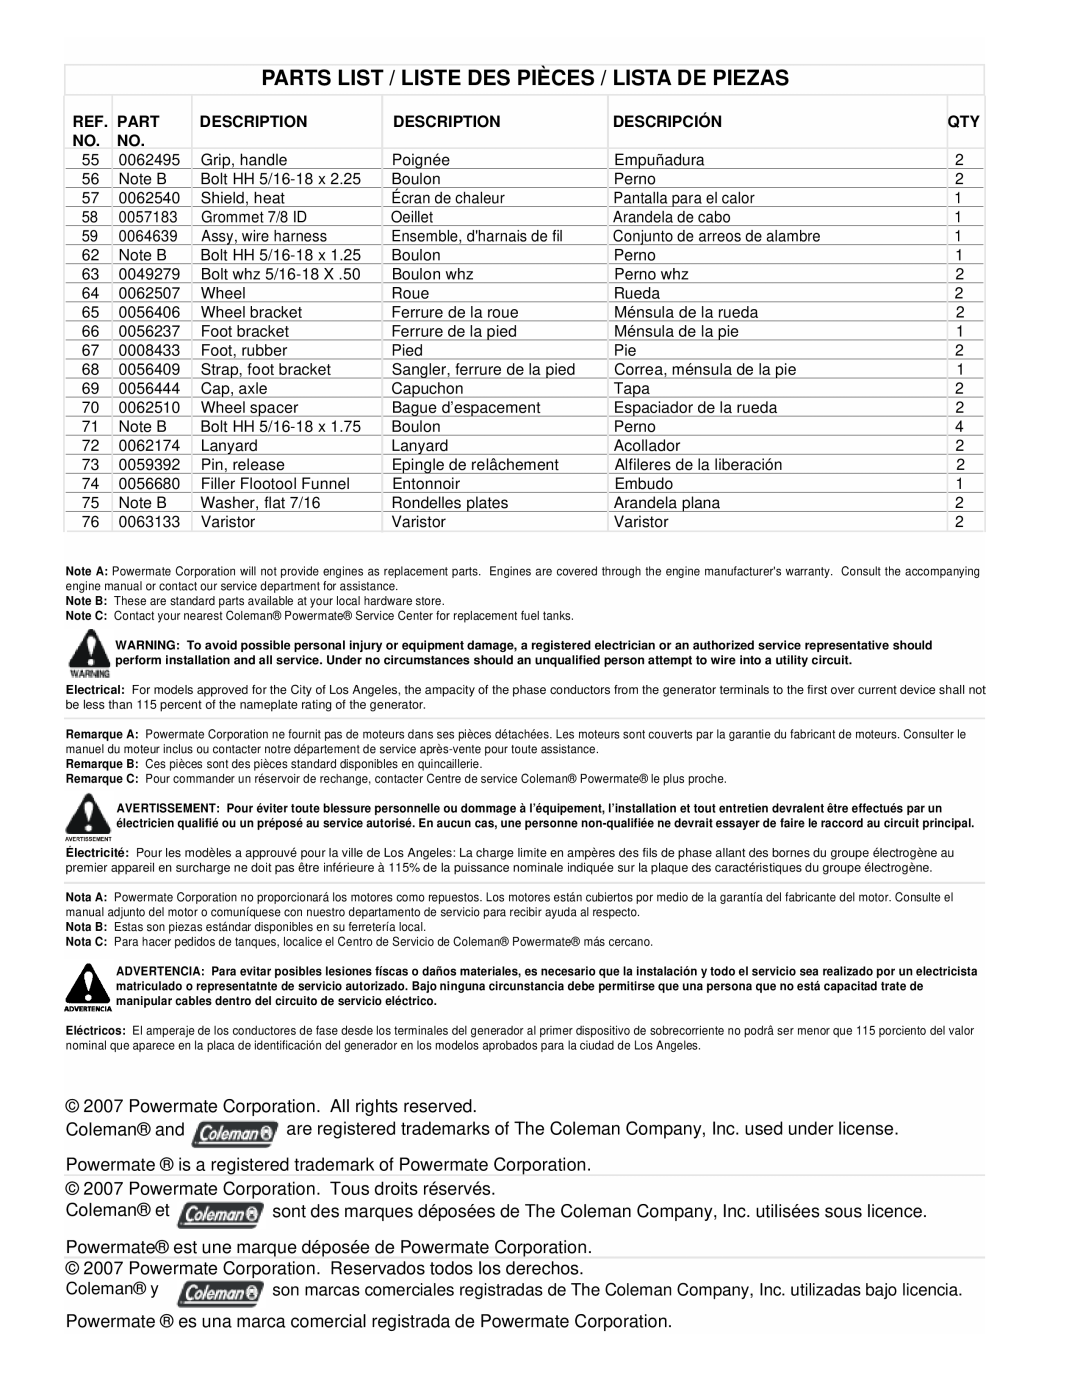 Powermate PMC601200 manual Parts List / Liste Des Pièces / Lista De Piezas 